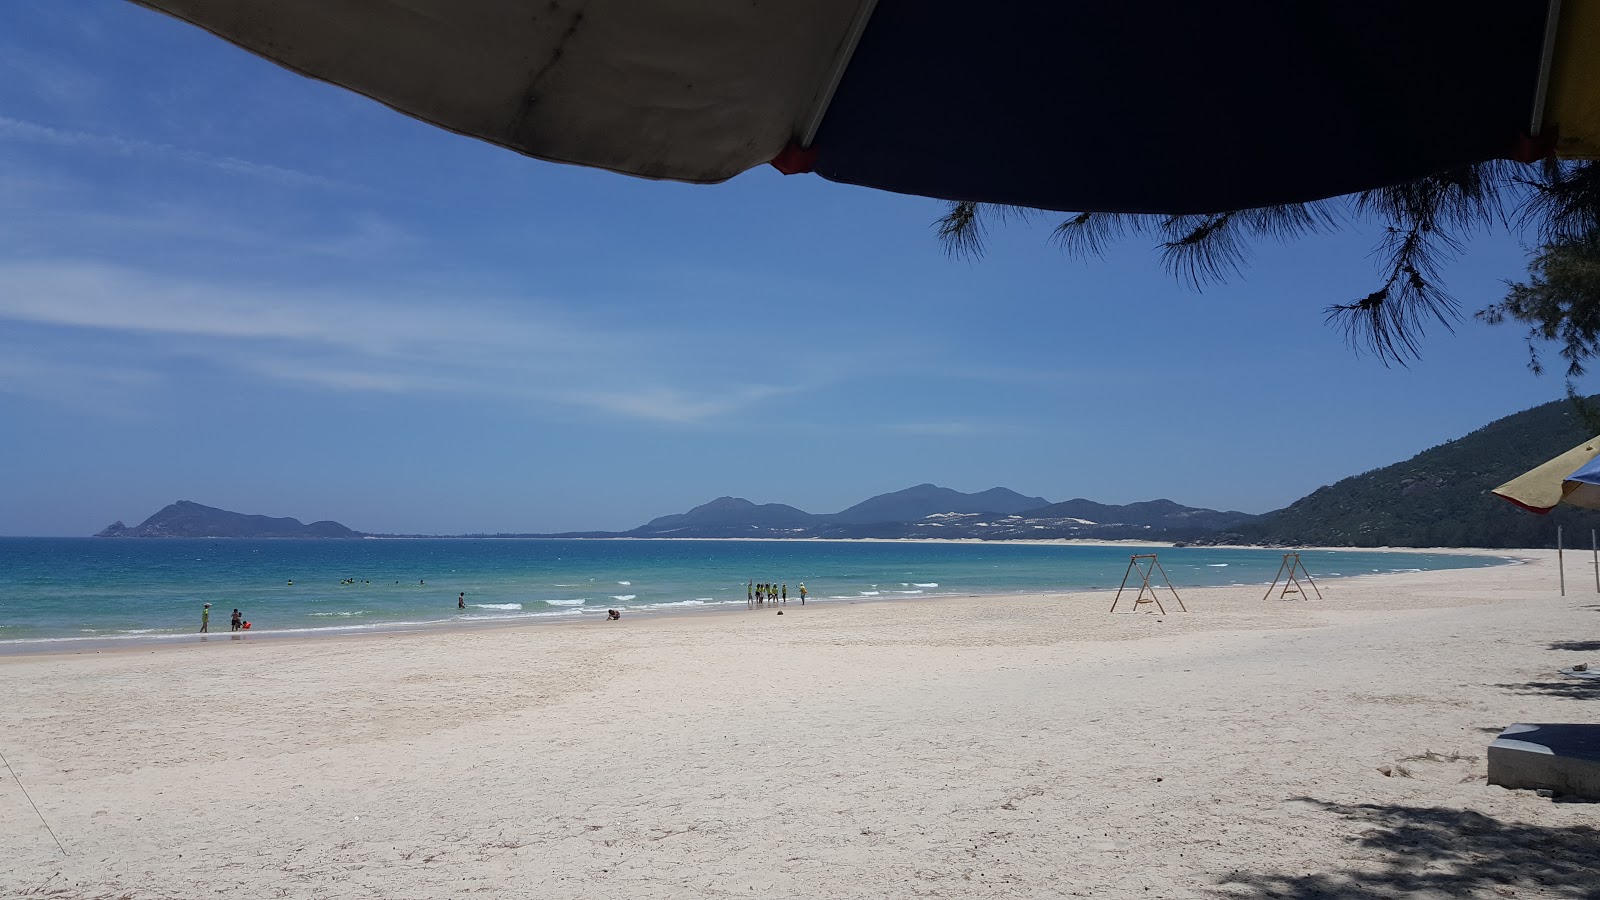 Bay Hoa Beach'in fotoğrafı imkanlar alanı